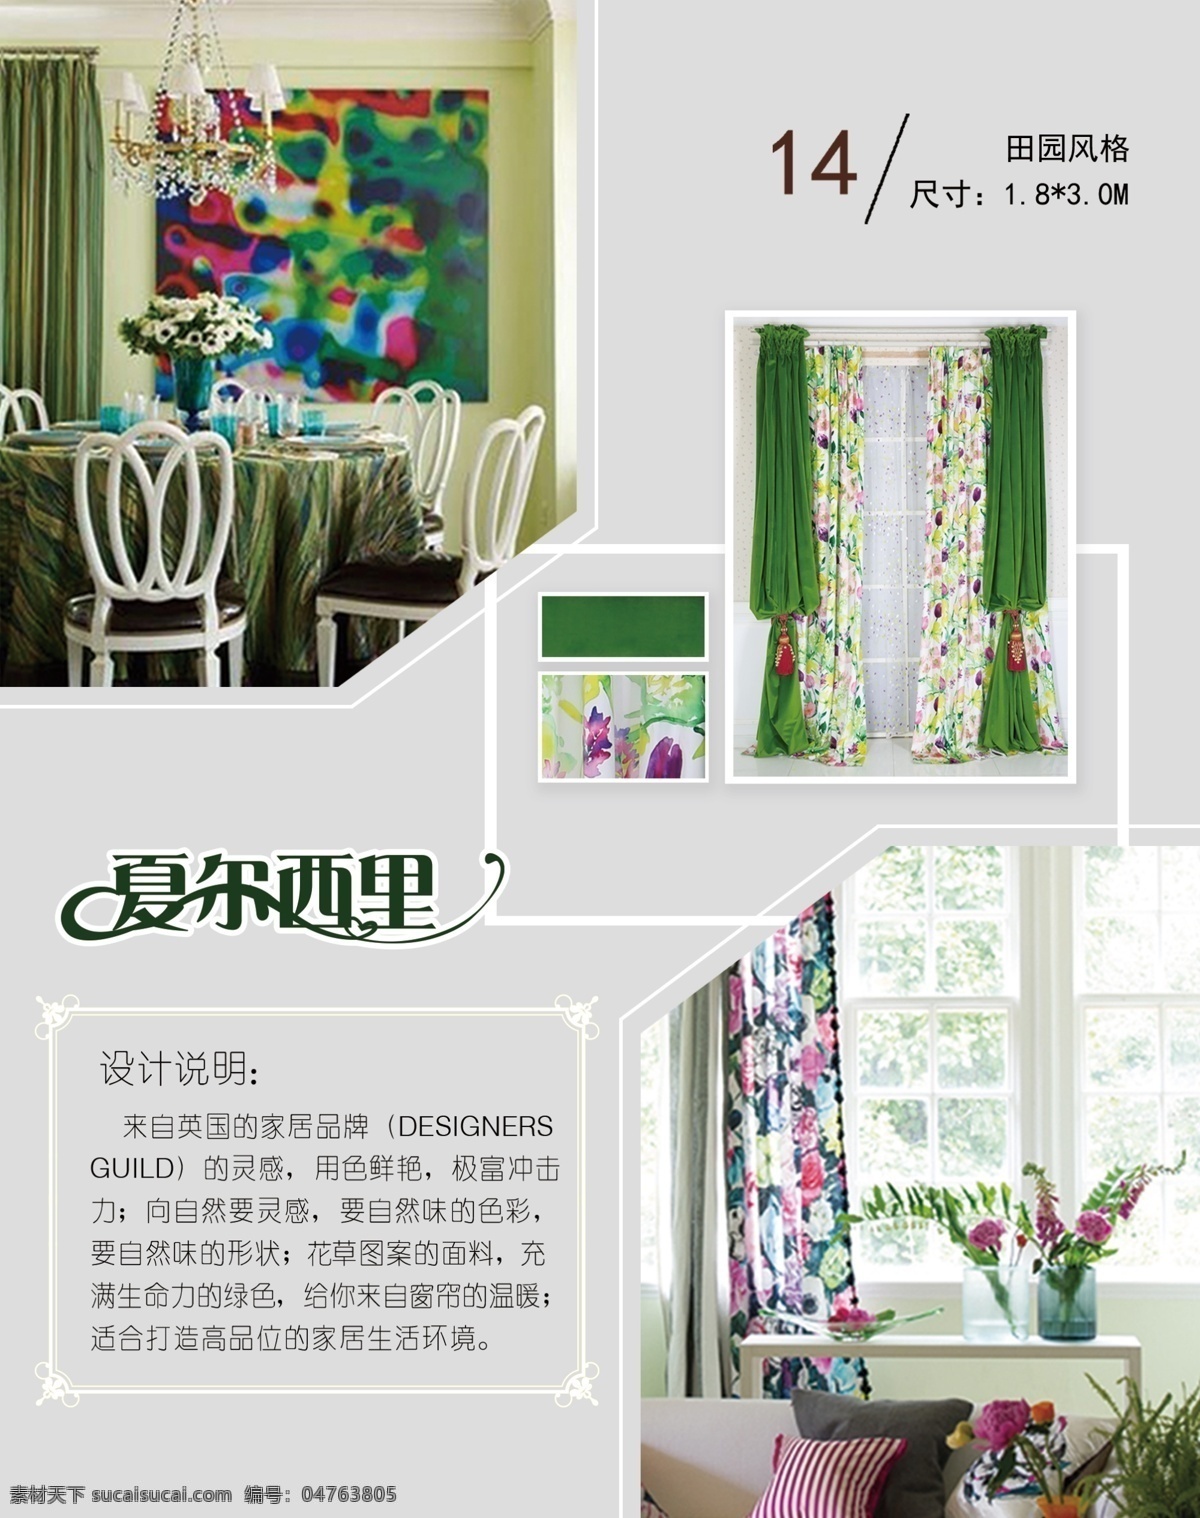 杂志内页排版 模版下载 清新素雅 内页排版 窗帘设计